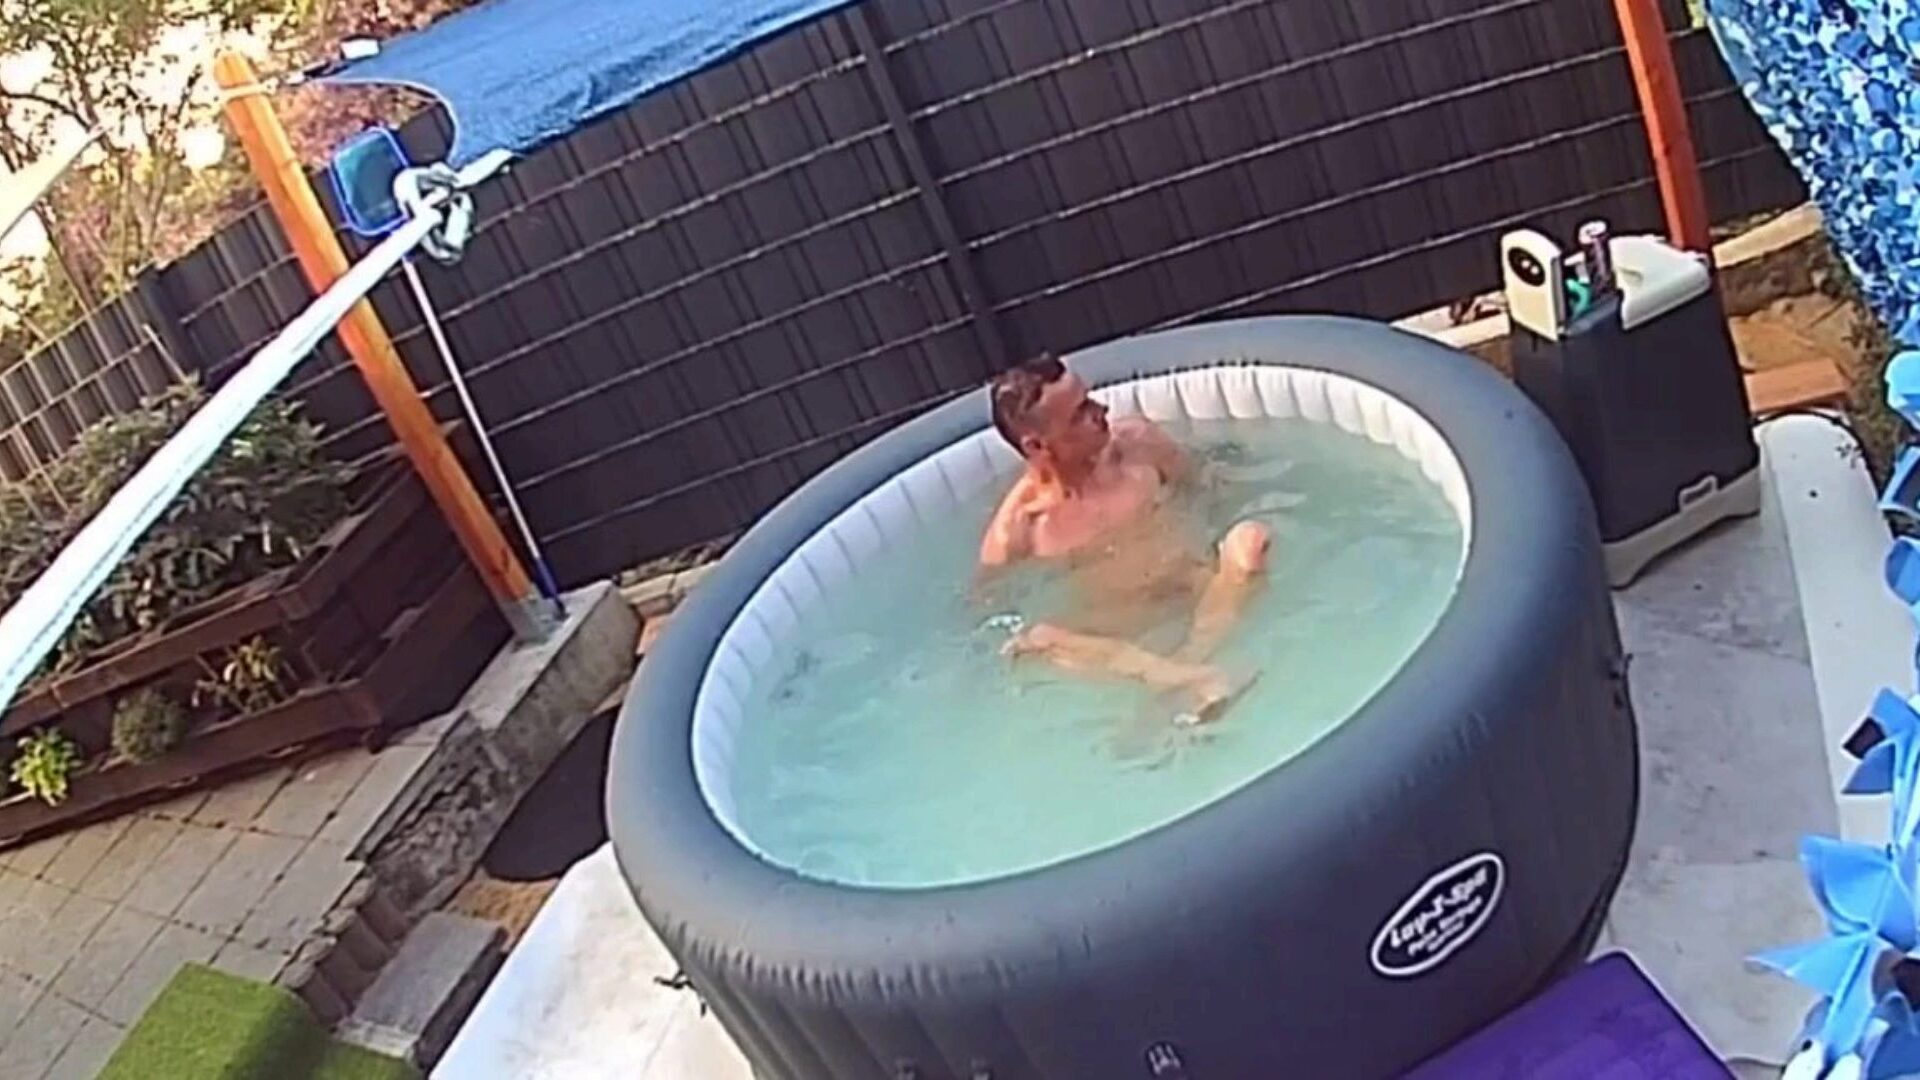 verstecke kamera：nachbarn im pool ausspioniert